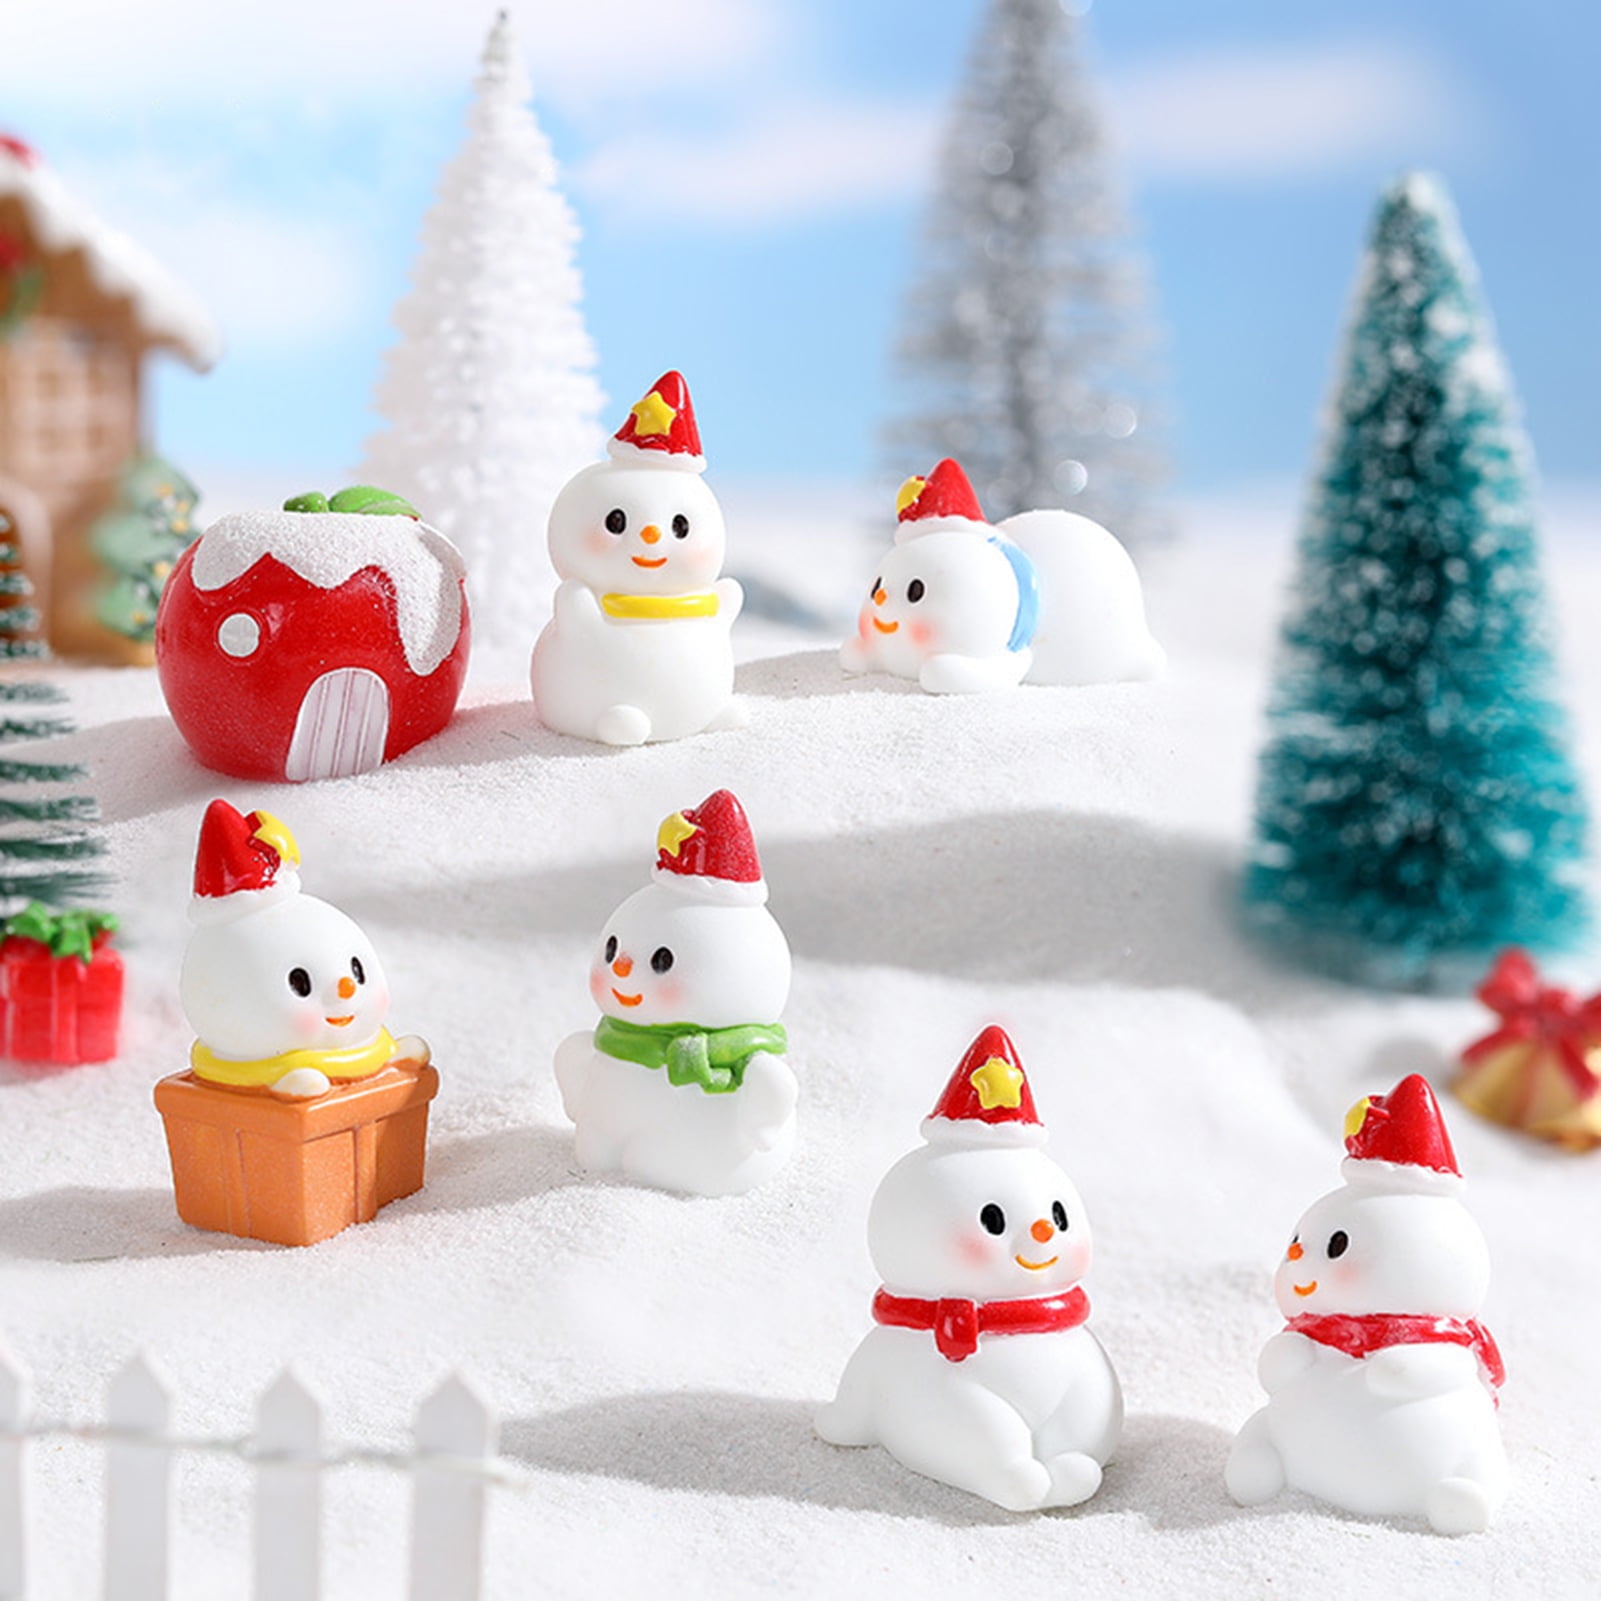 Visland Christmas Miniature Ornaments, Christmas Fairy Garden